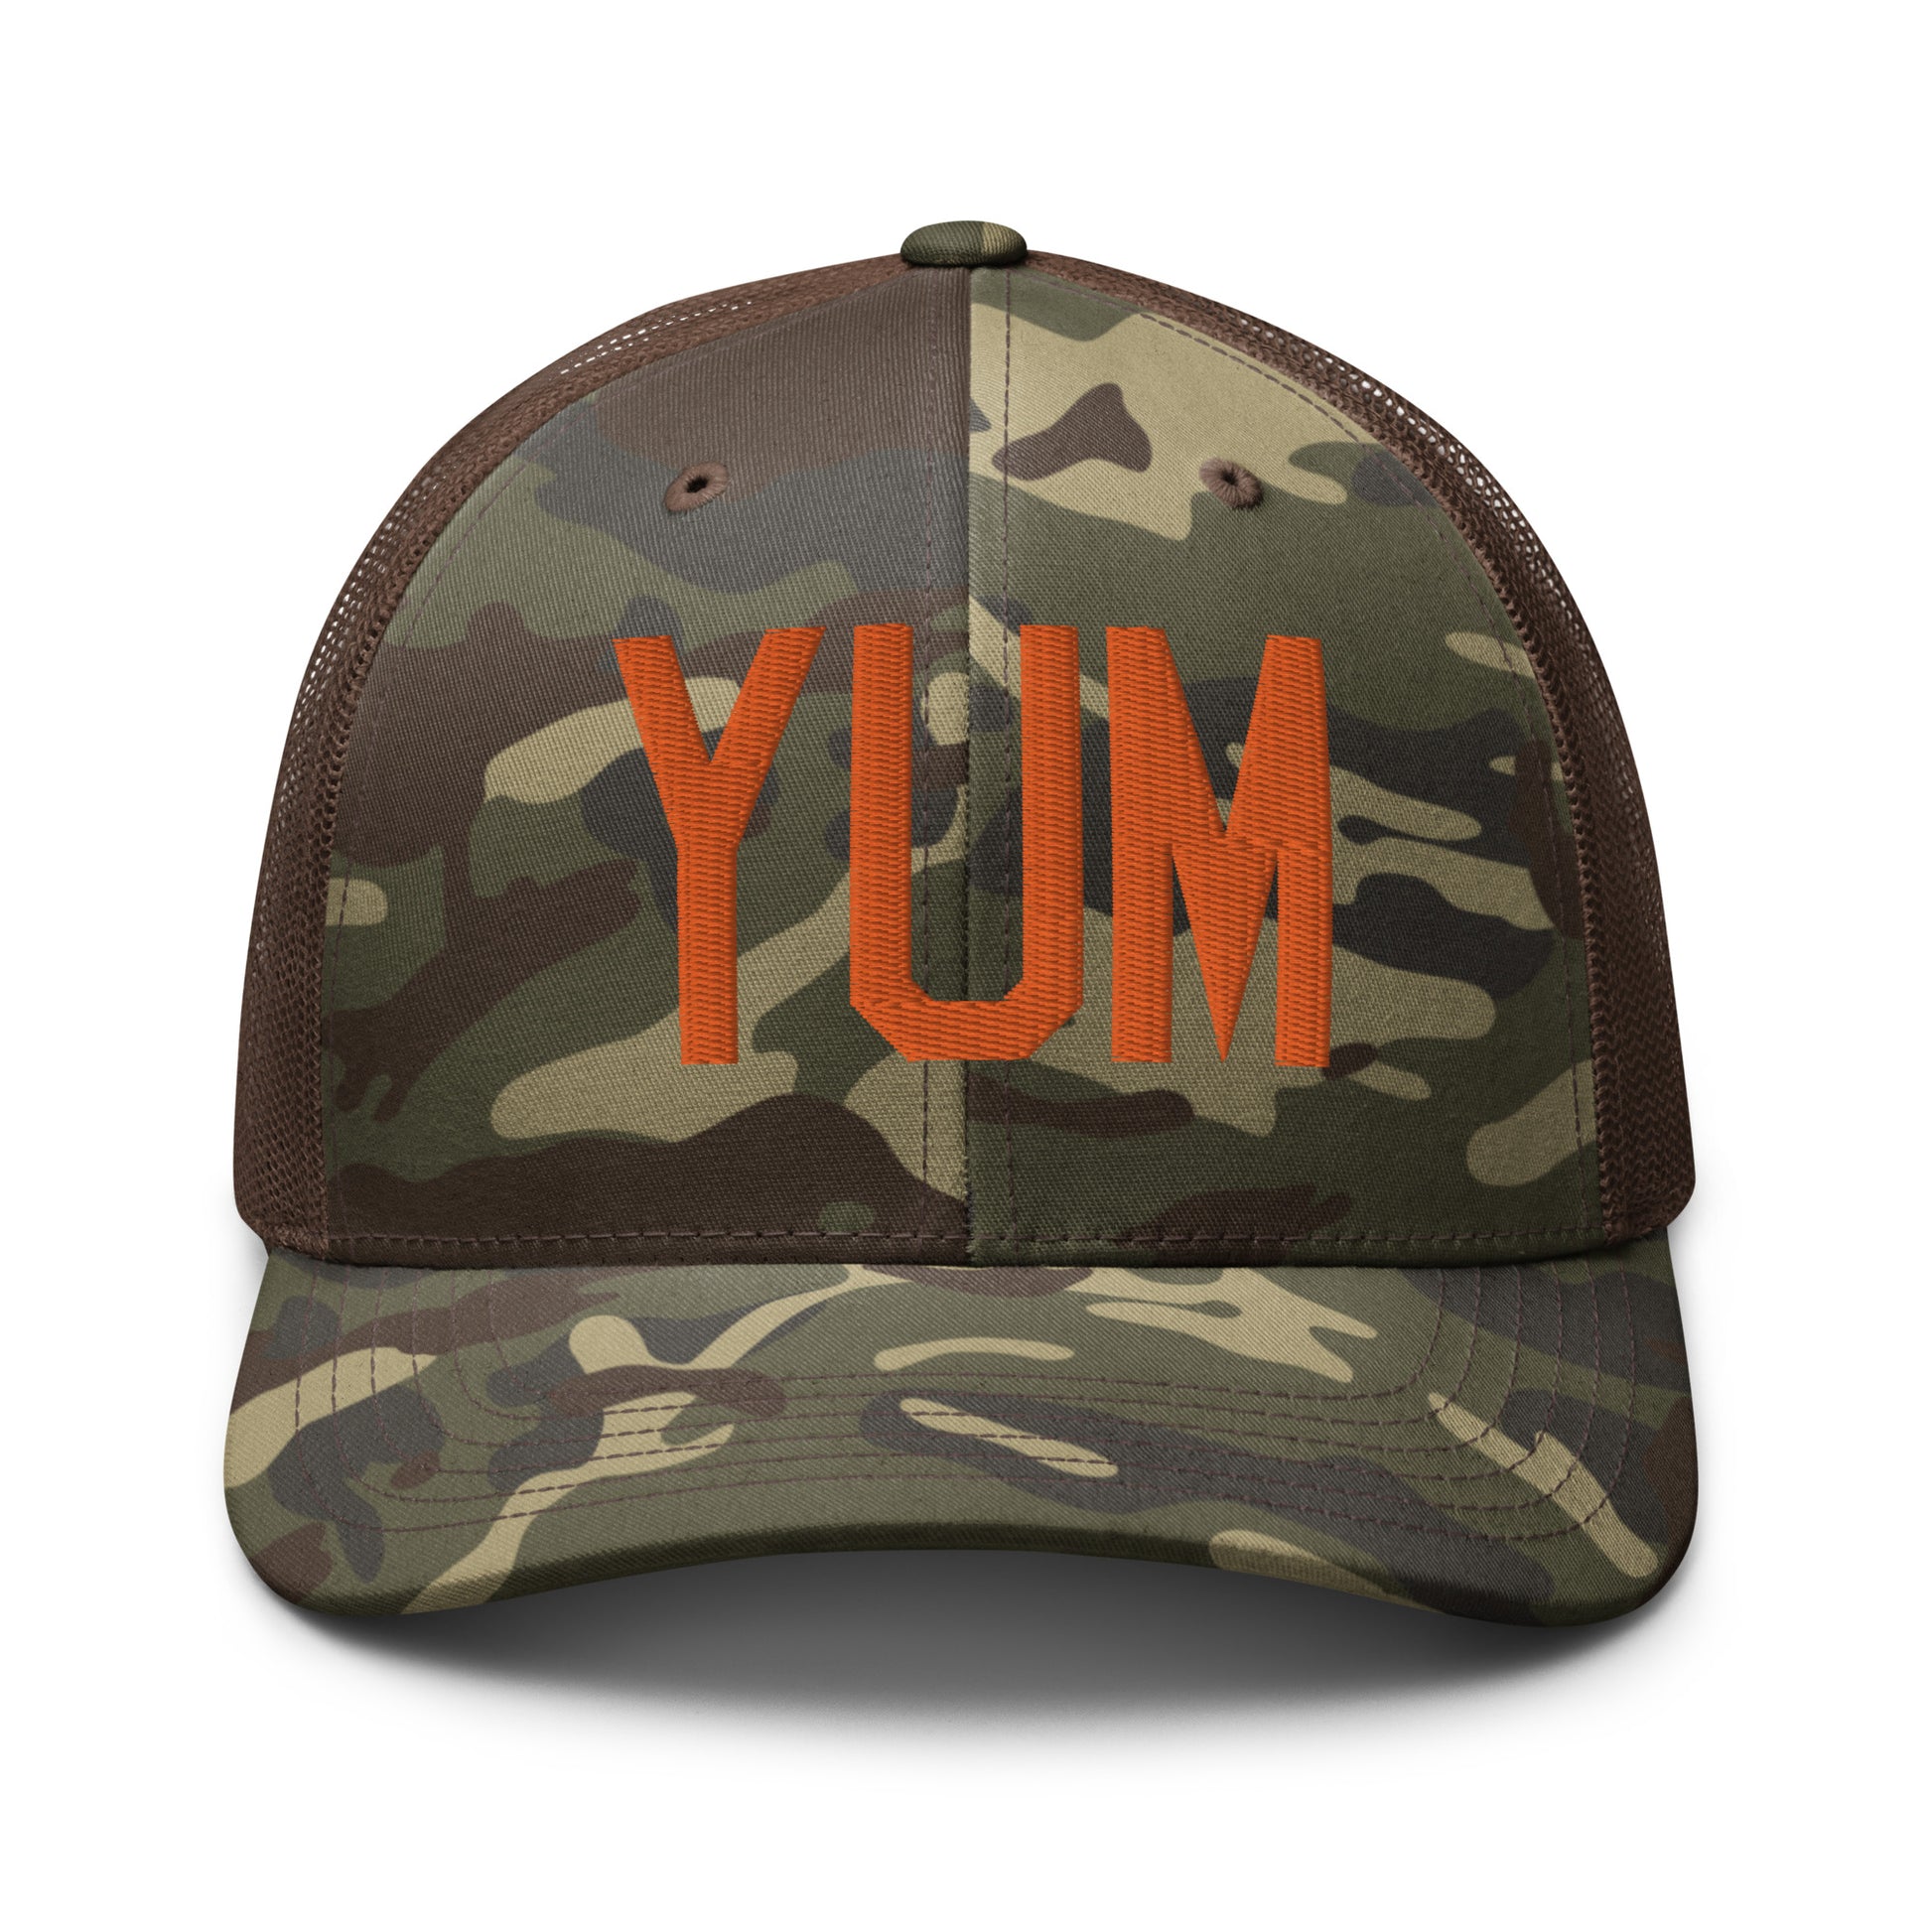 Airport Code Camouflage Trucker Hat - Orange • YUM Yuma • YHM Designs - Image 13